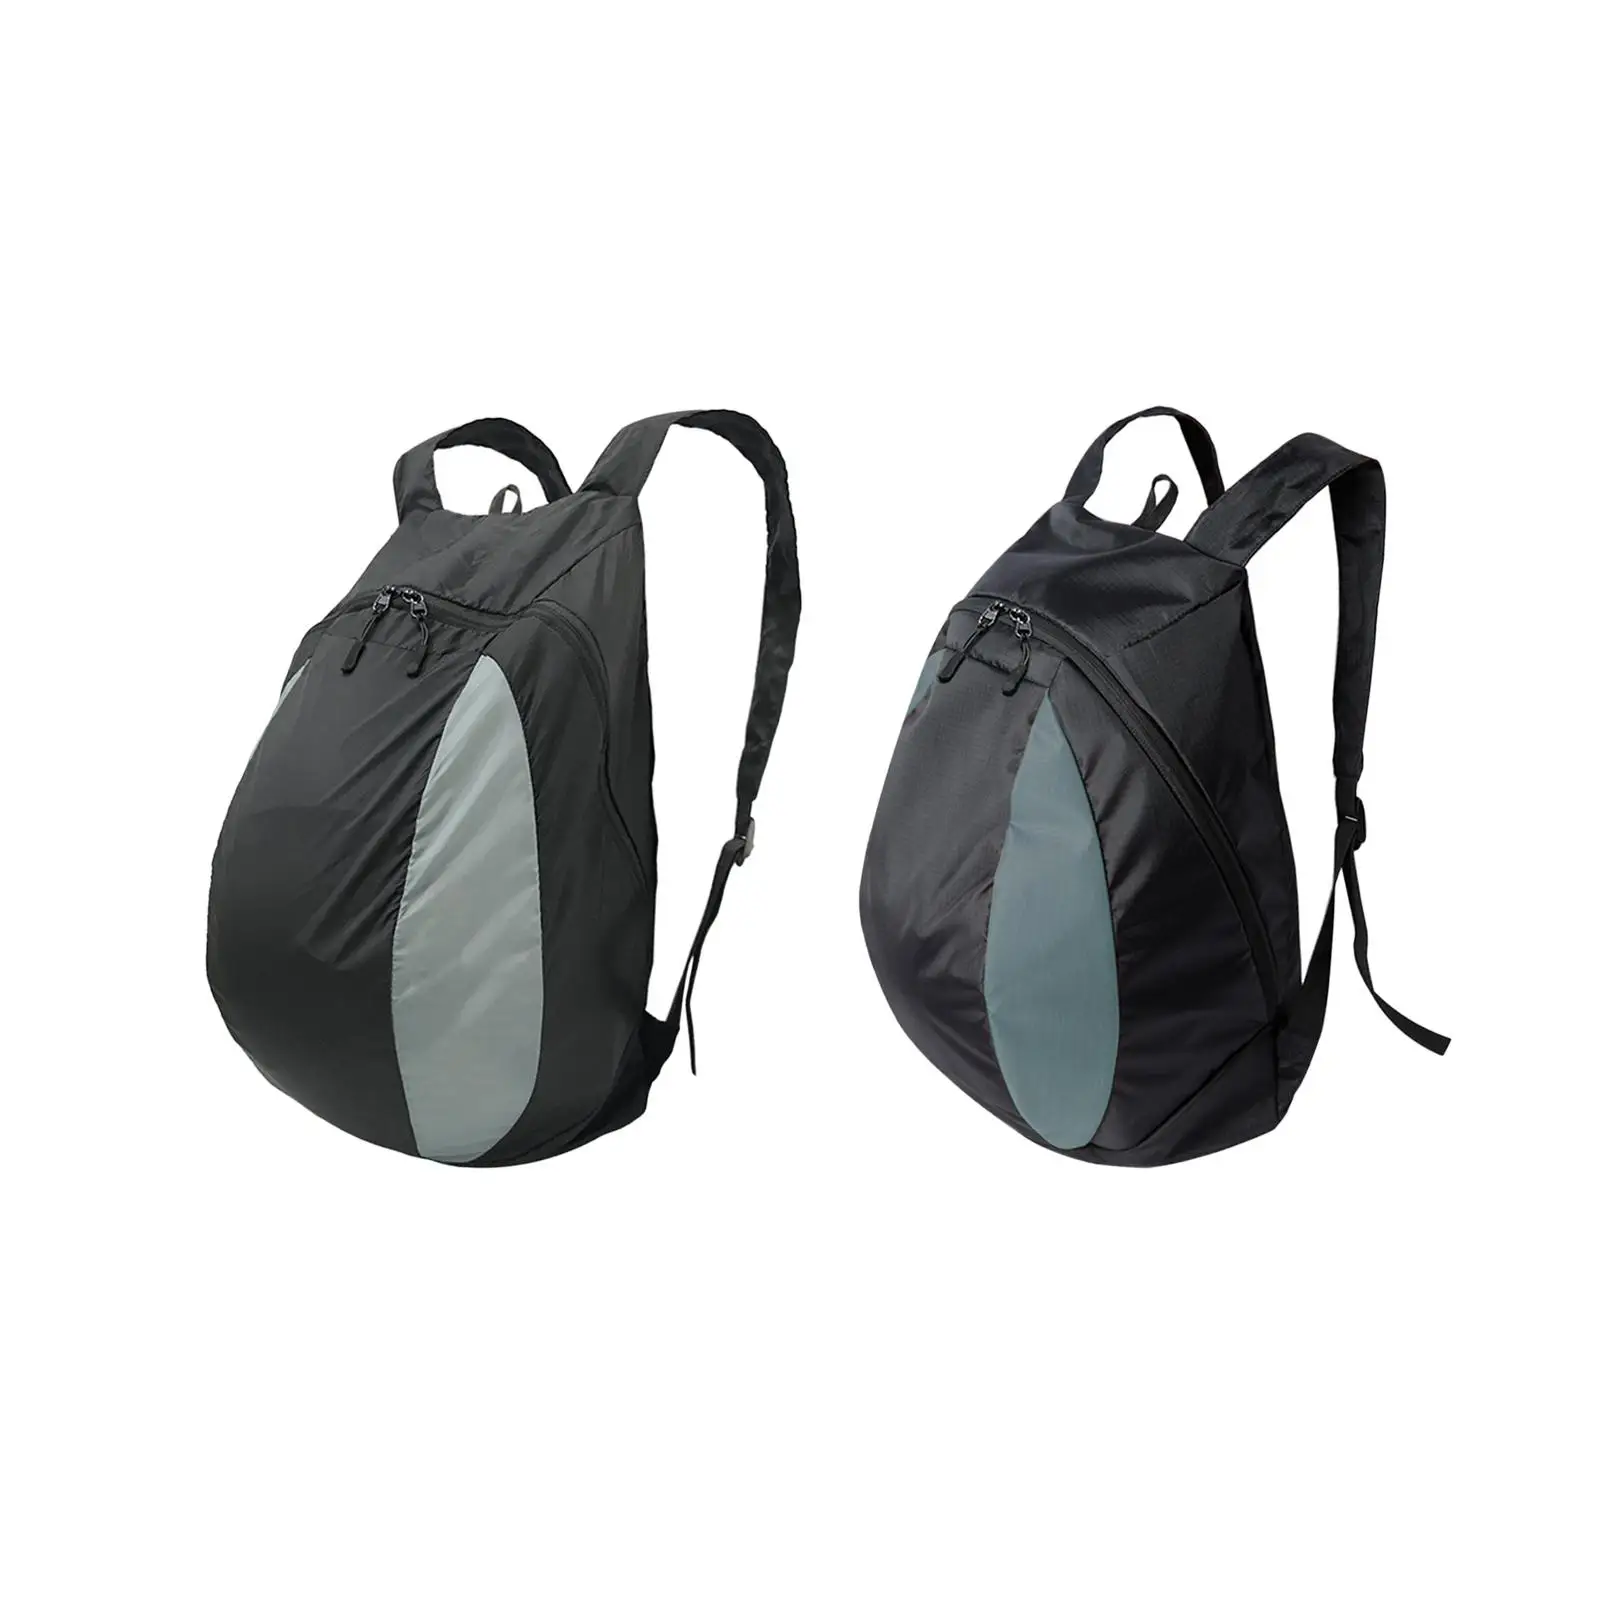 

Basketball Shoulder Bag Football Bag Sturdy Tear Resistant Soccer Storage Bag Holder for Study Sports Boys Girls Women Men